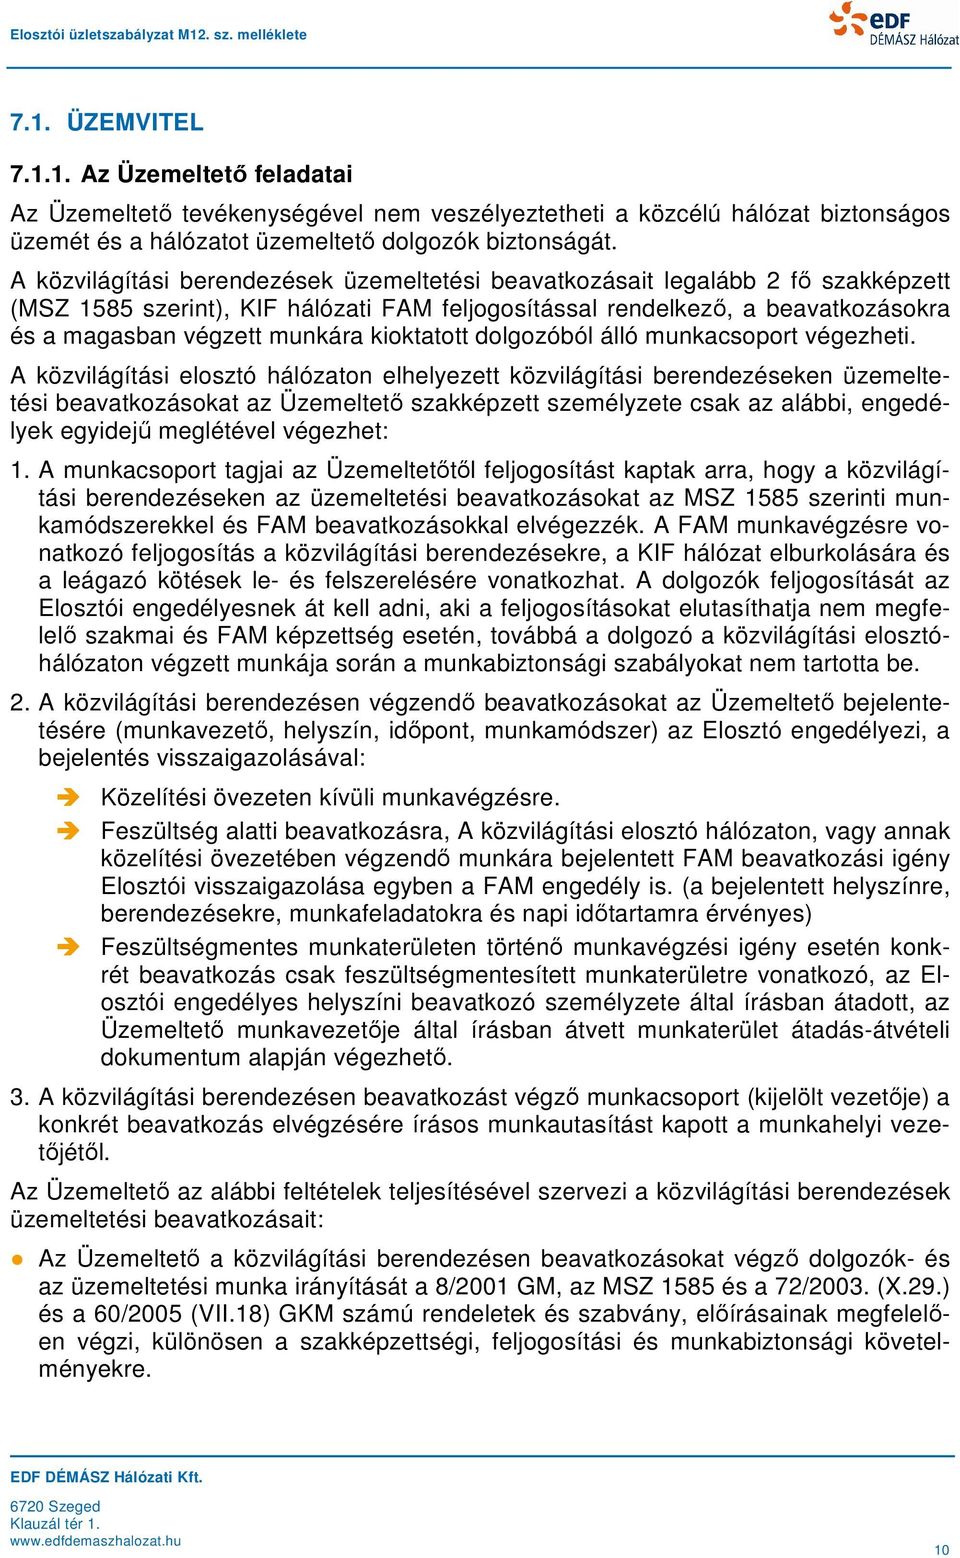 EDF DÉMÁSZ Hálózati Elosztó Korlátolt Felelősségű Társaság Elosztói  Üzletszabályzata - PDF Ingyenes letöltés